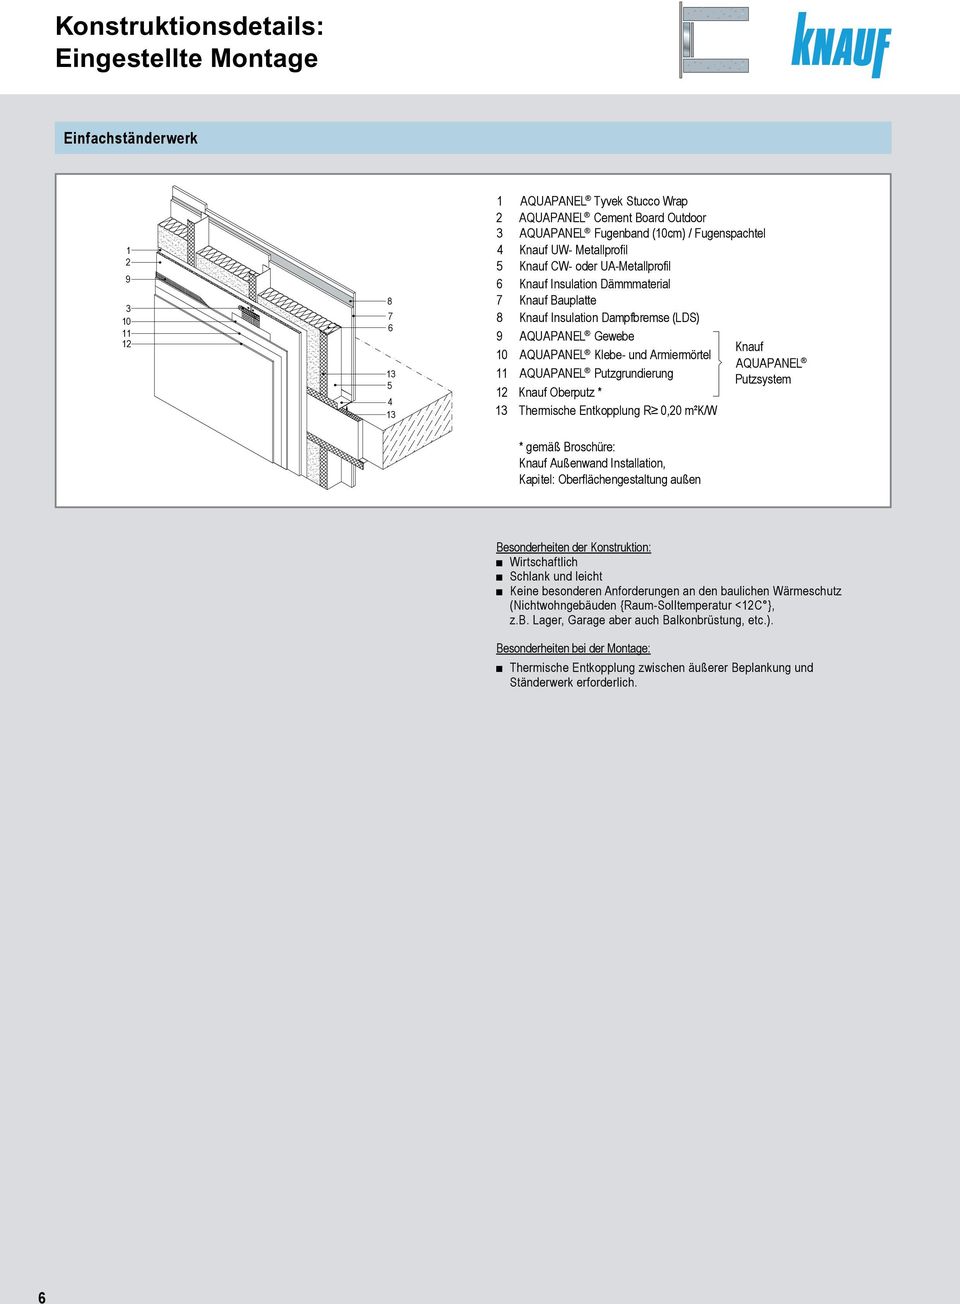 Knauf Außenwand Installation, Kapitel: Oberflächengestaltung außen Besonderheiten der Konstruktion: Wirtschaftlich Schlank und leicht Keine besonderen Anforderungen an den baulichen